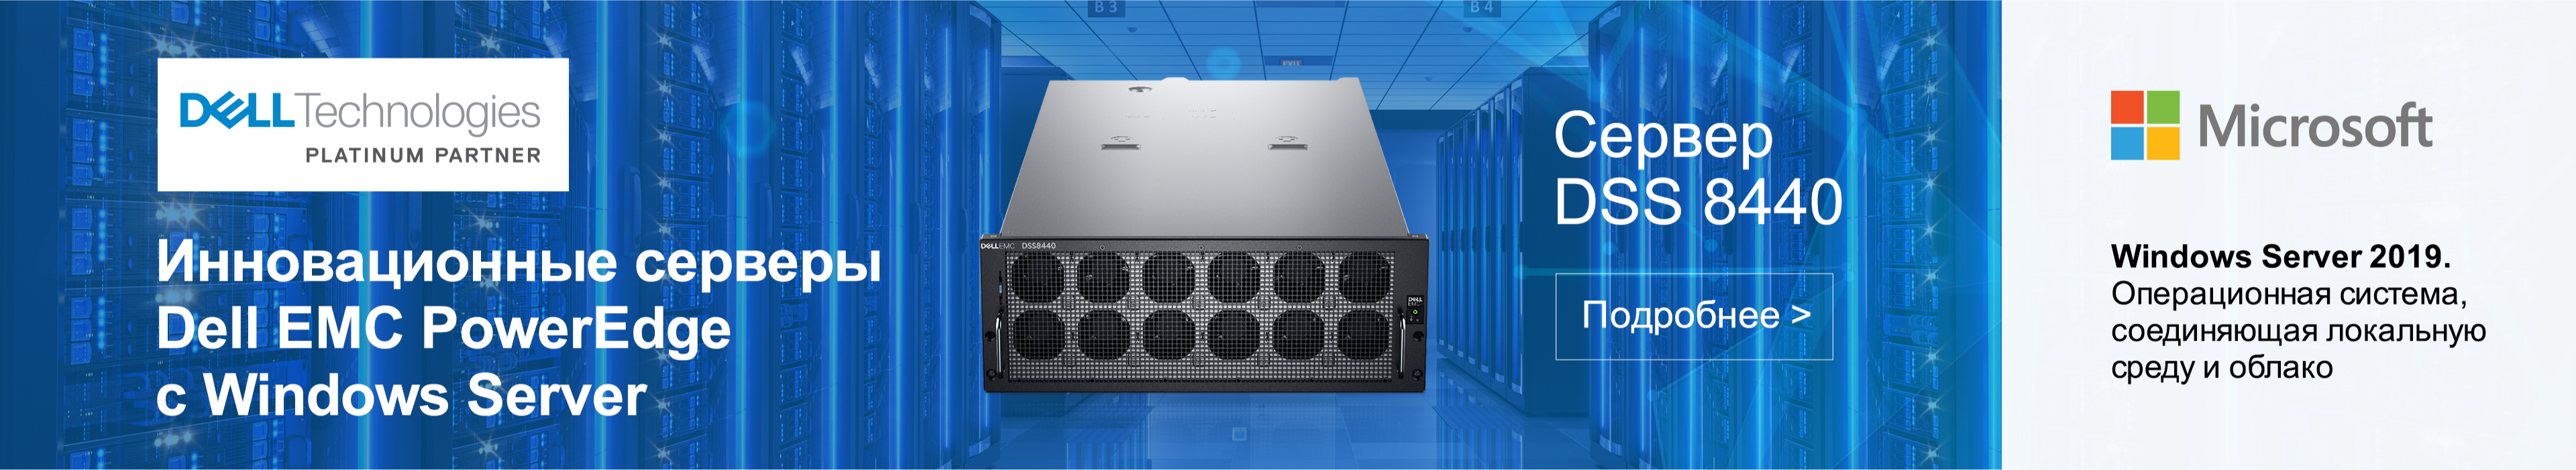 Инновационные серверы Dell EMC PowerEdge c Windows Server